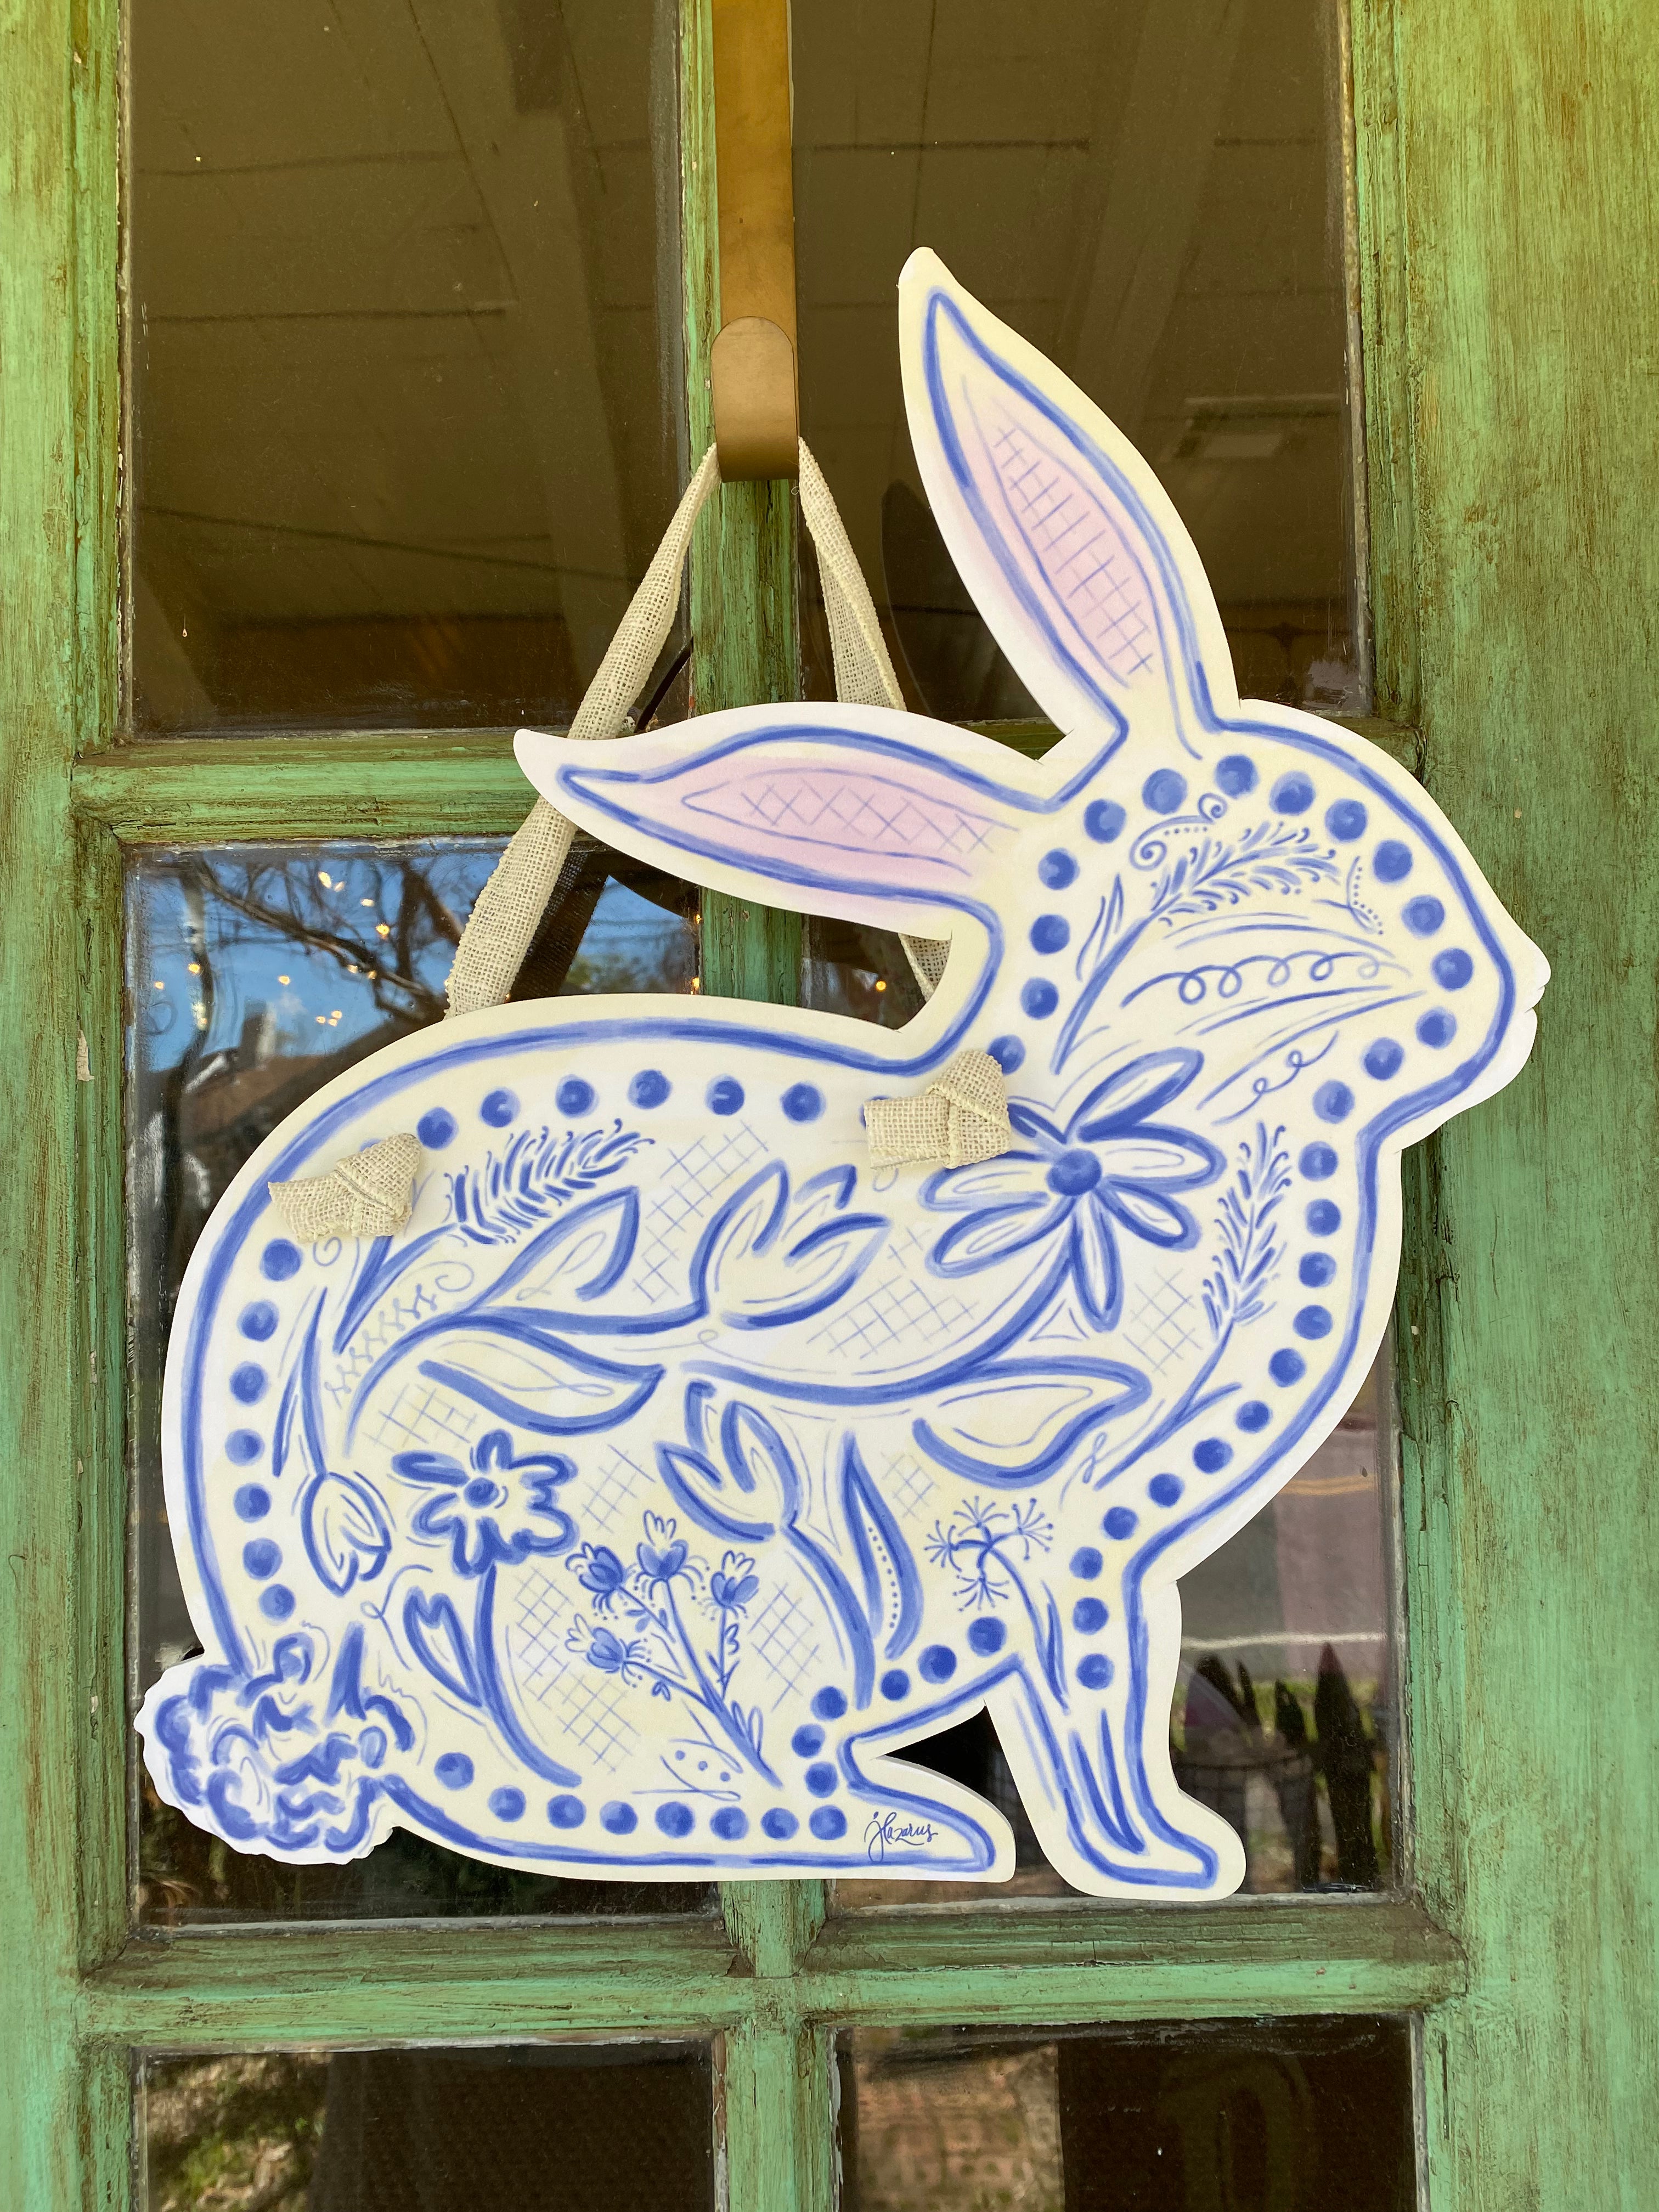 Chinoiserie Bunny Door Hanger